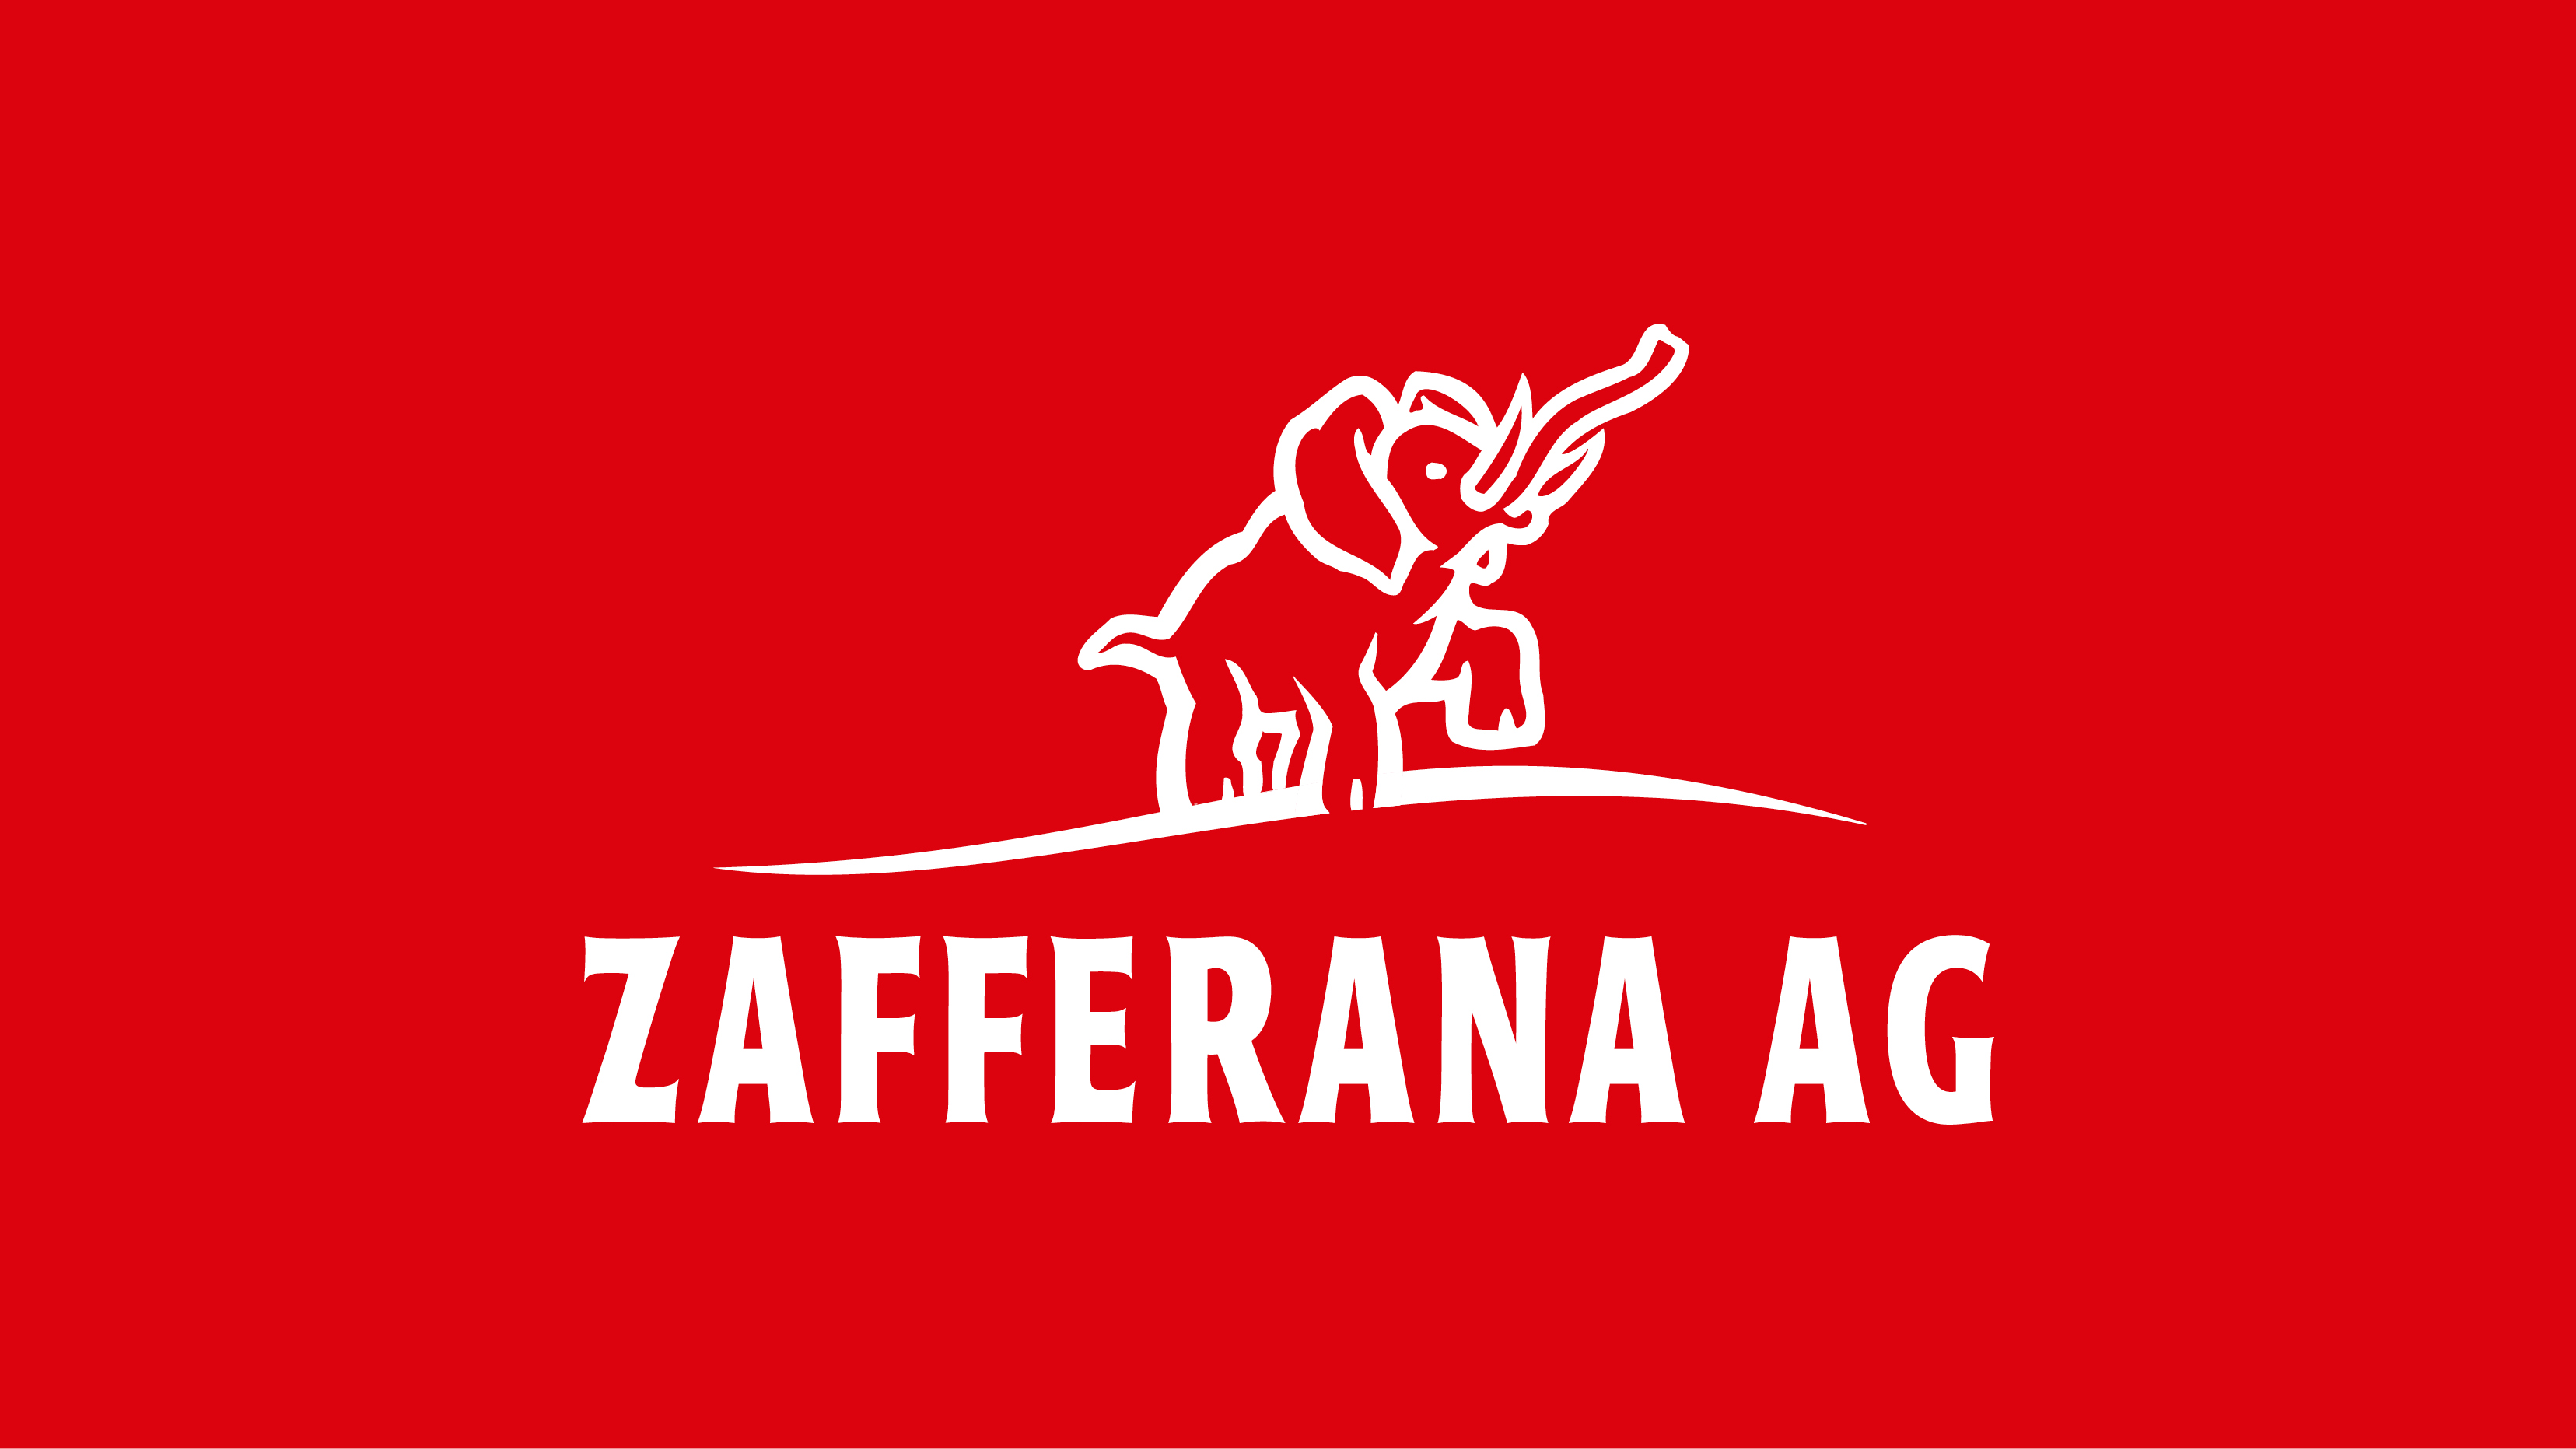 Zafferana AG